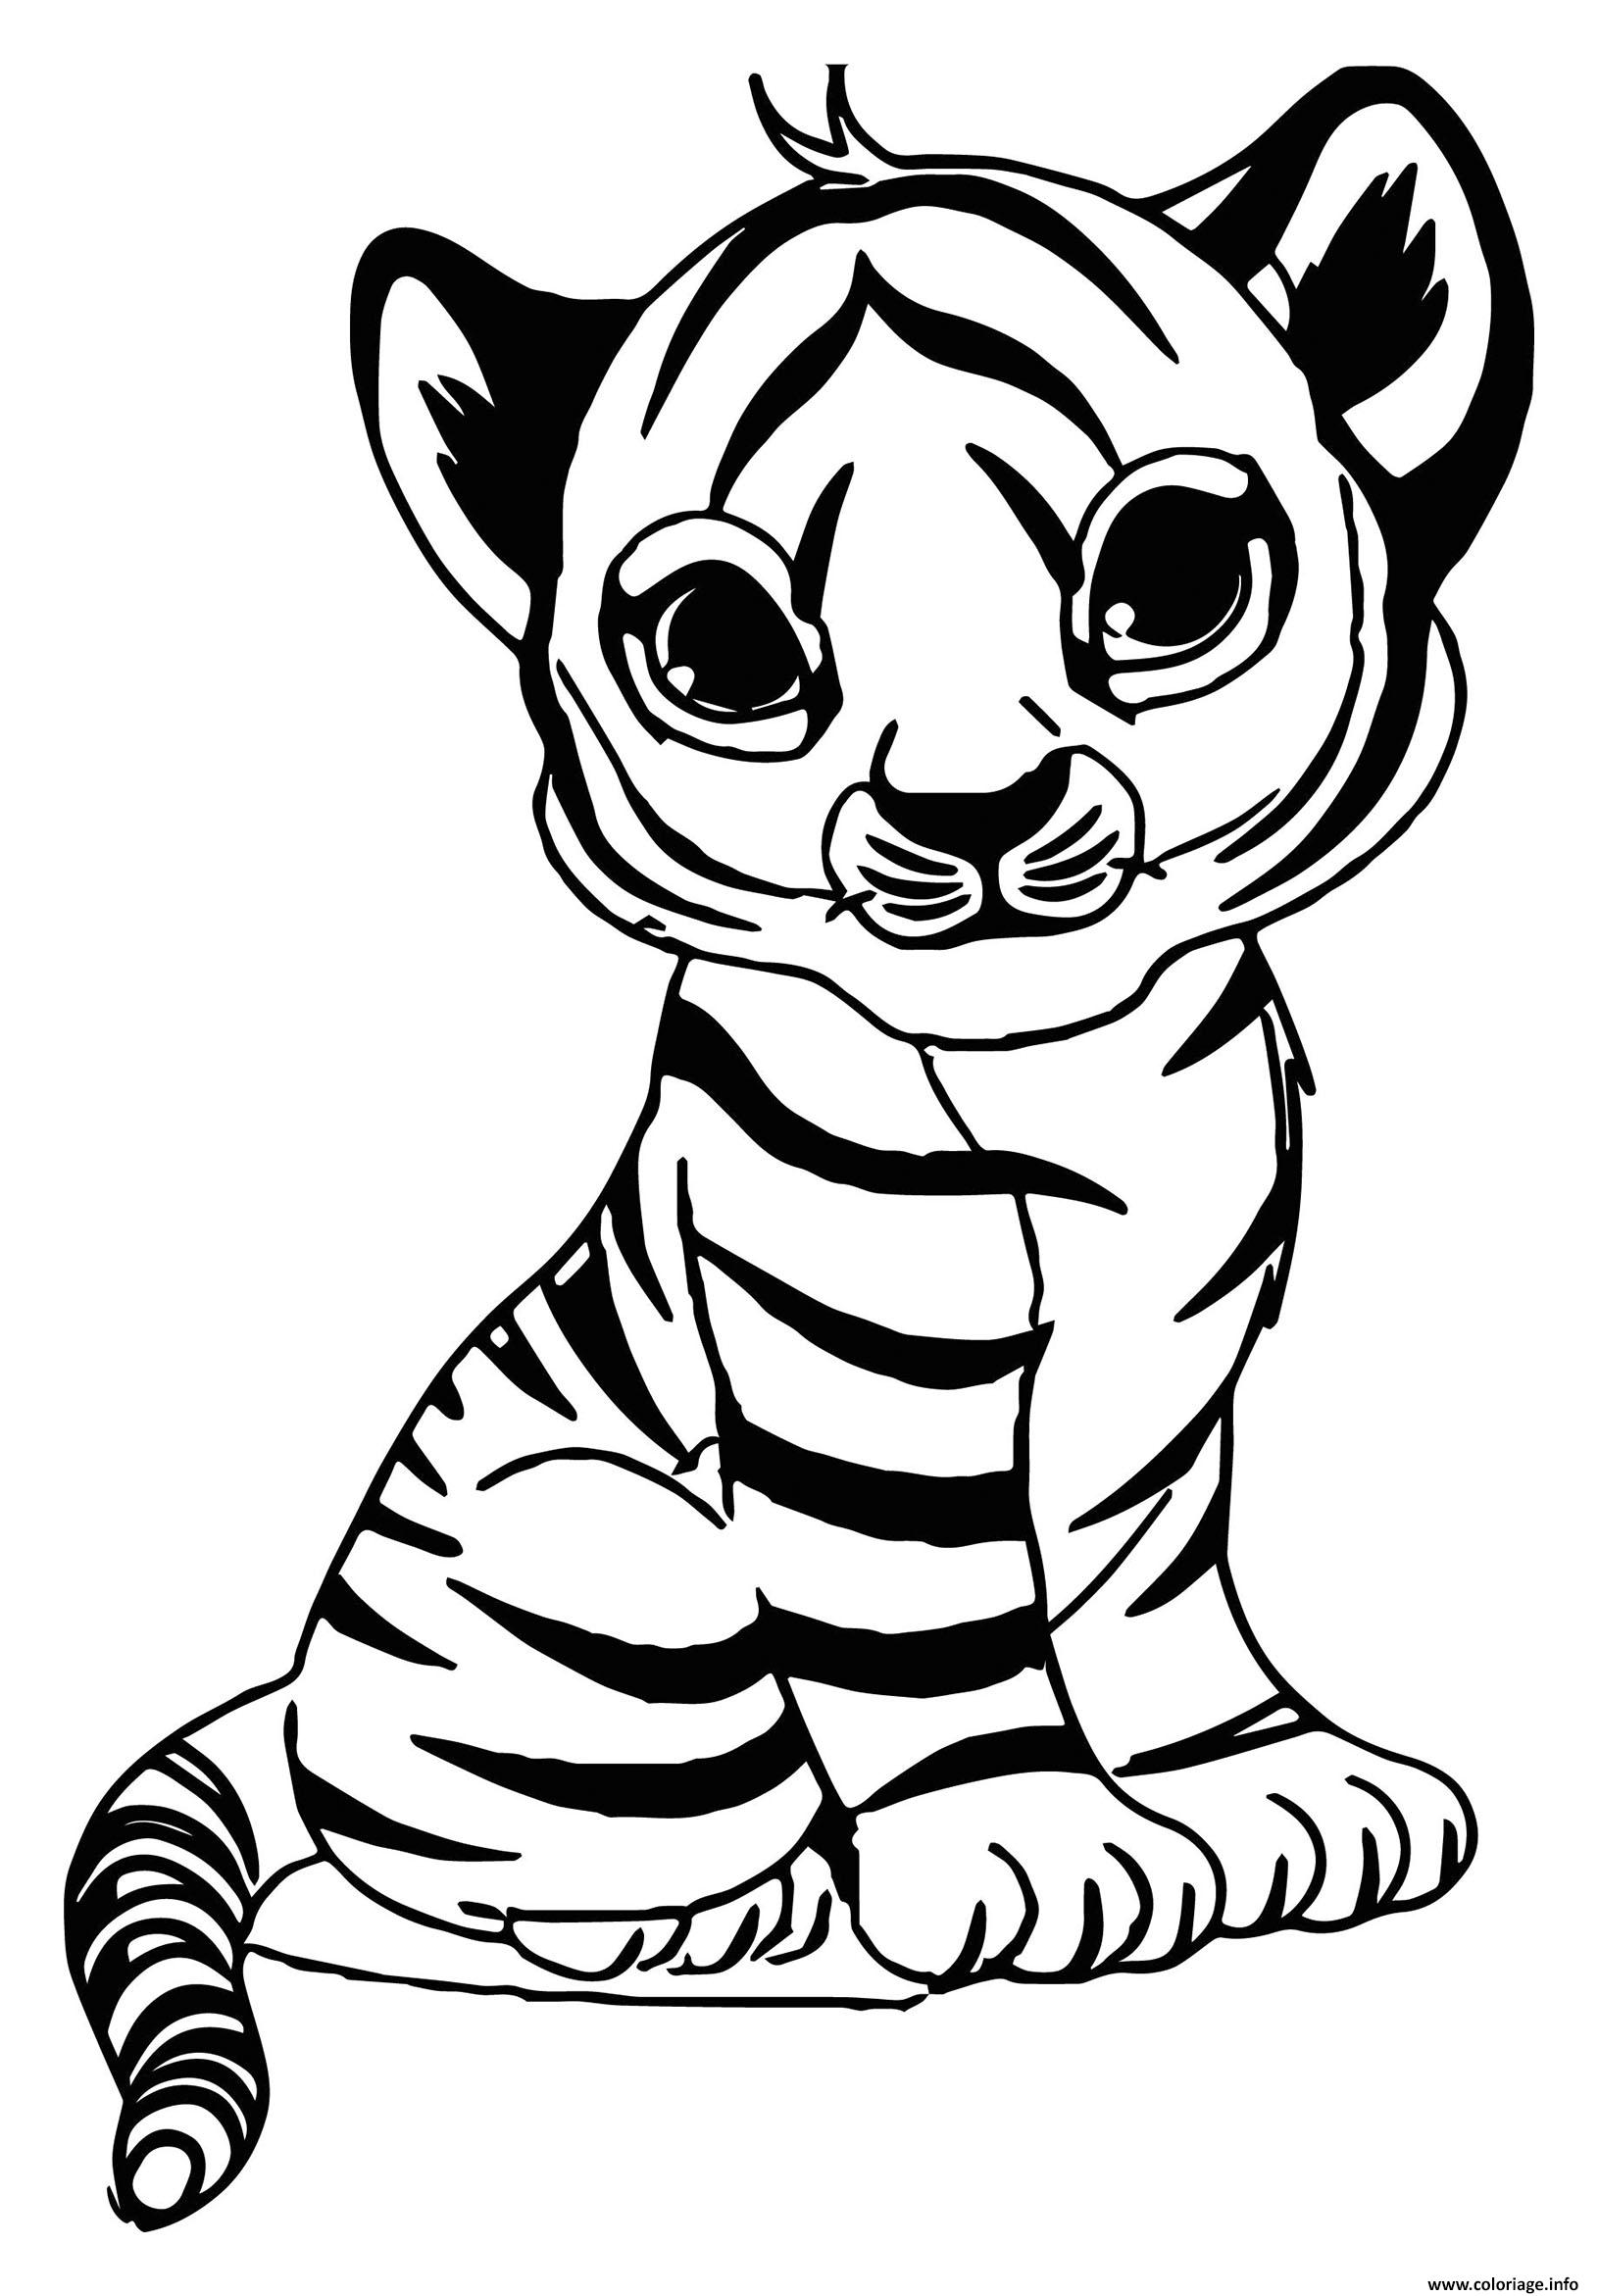 Dessin un bebe tigre felin avec fourrure jaune rayee de noir Coloriage Gratuit à Imprimer